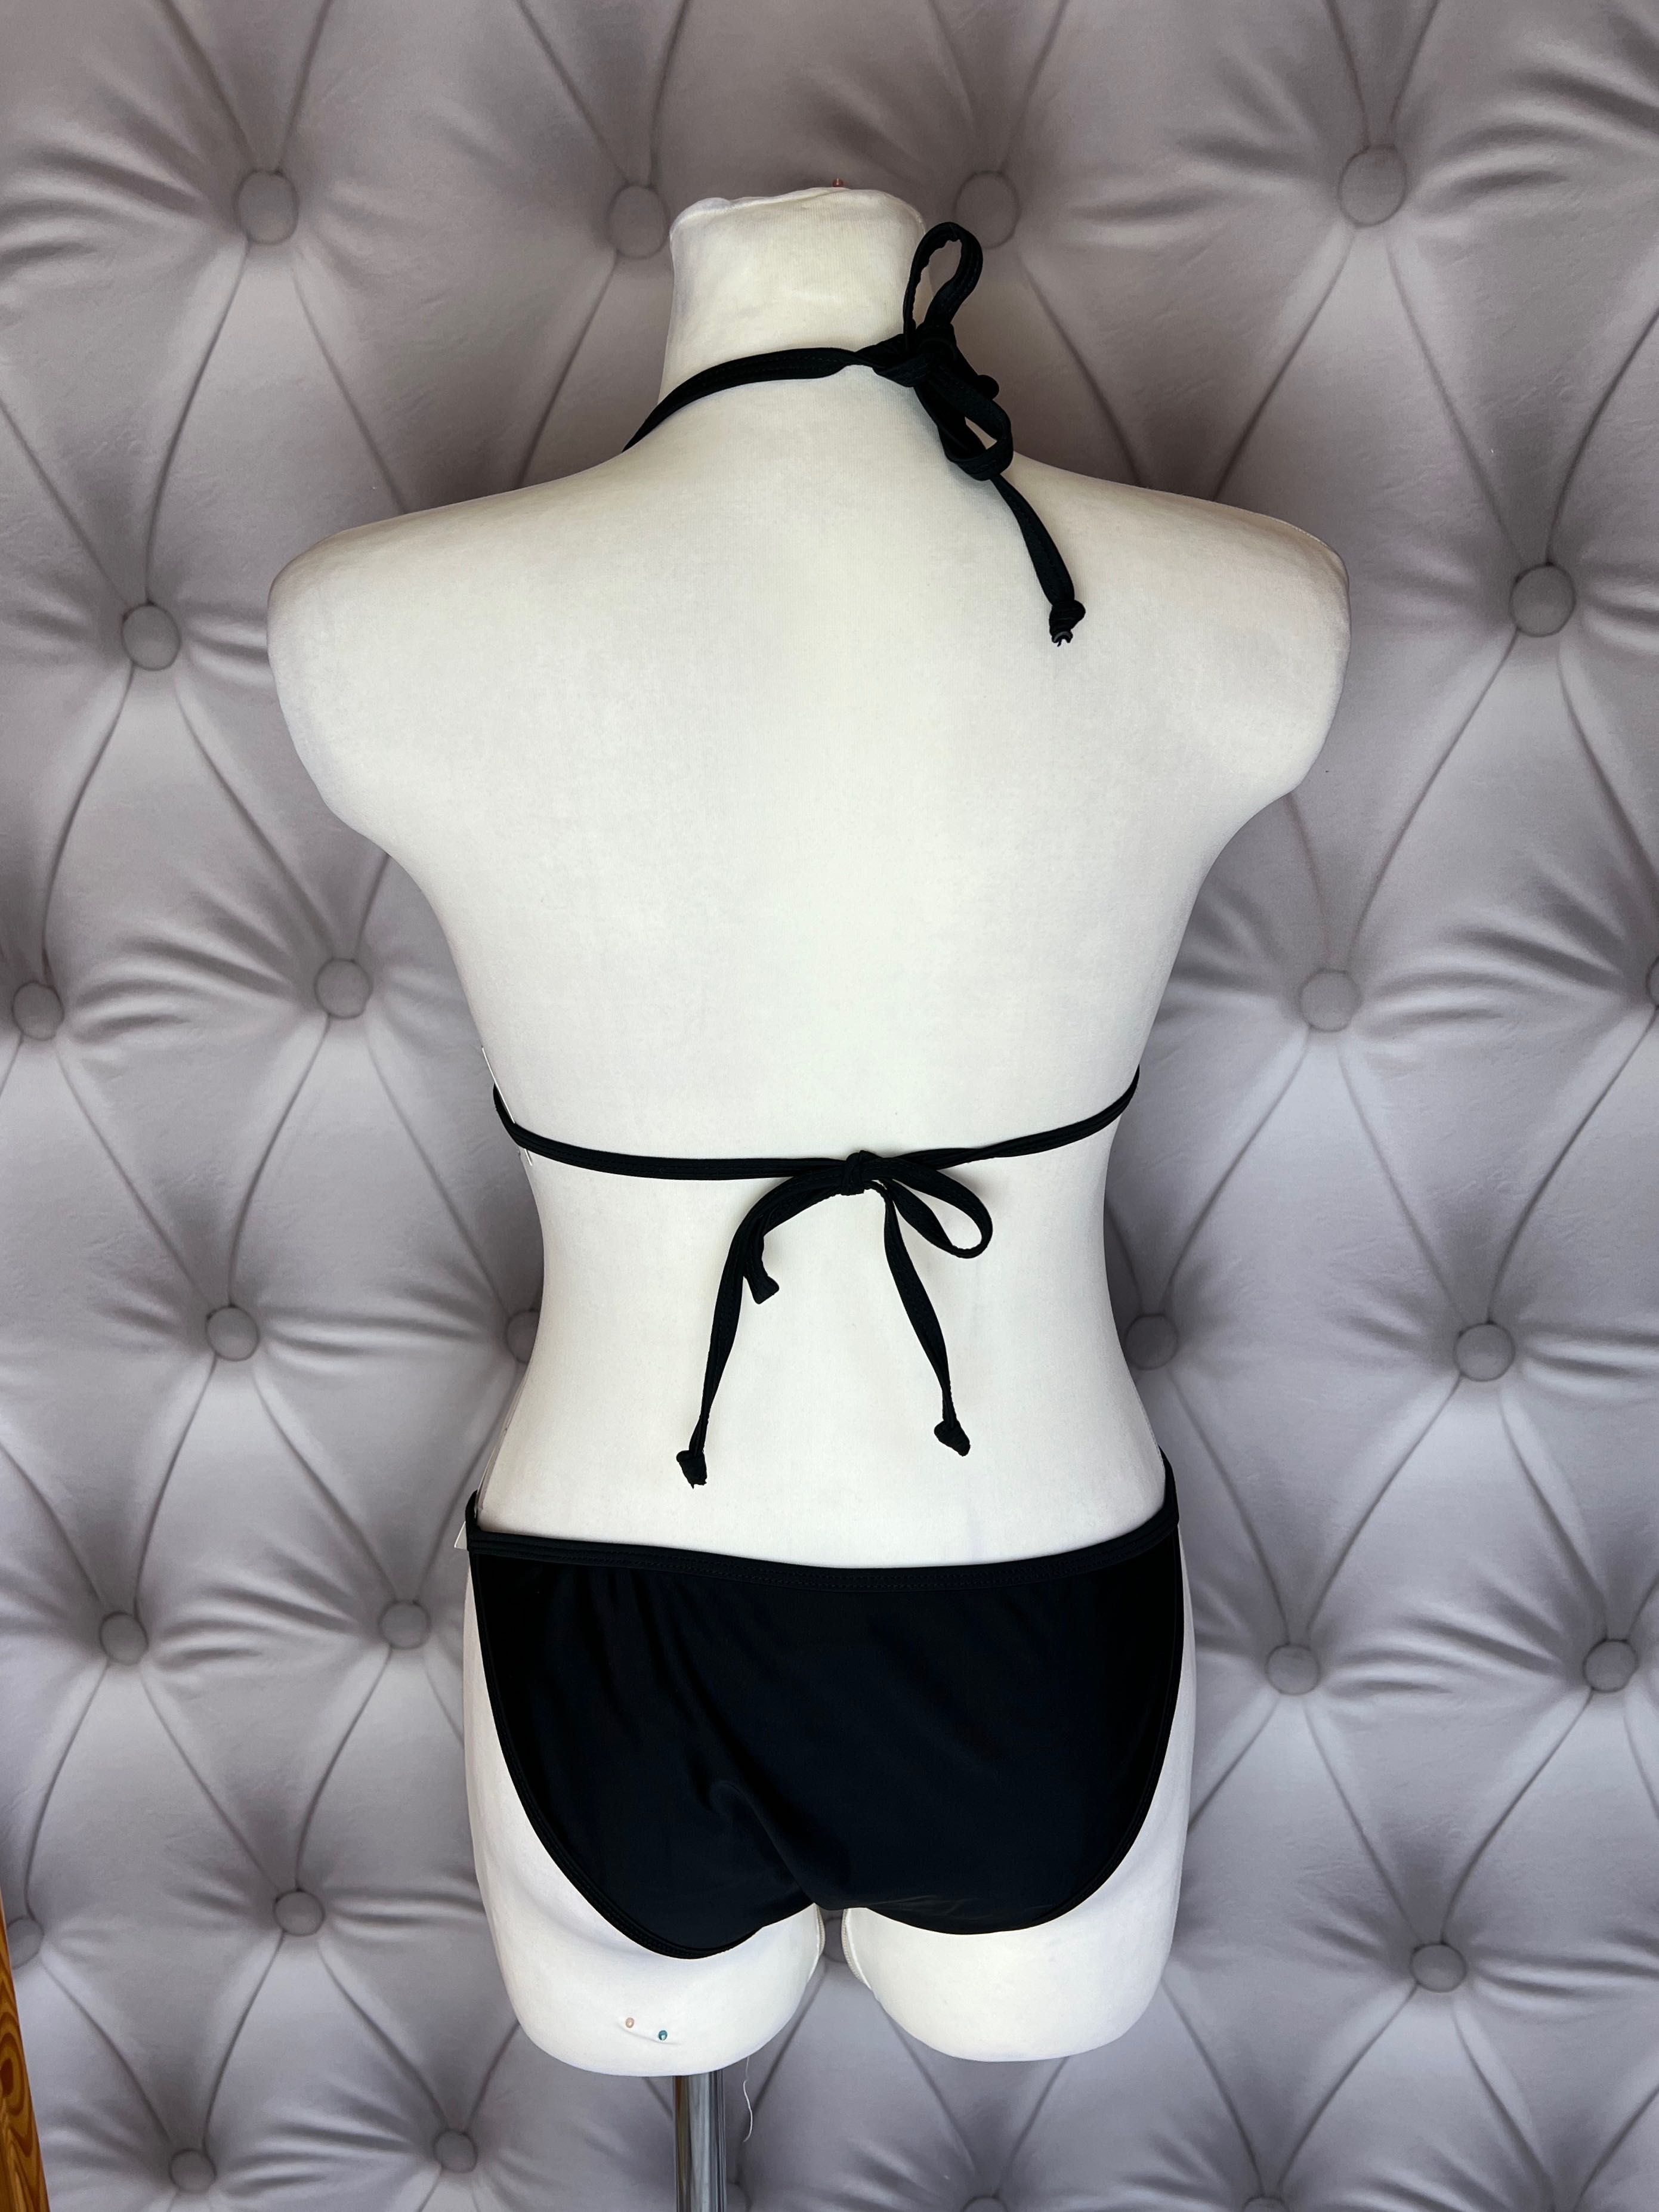 Strój kąpielowy bikini kostium L czarny klasyczny siateczka wiązany